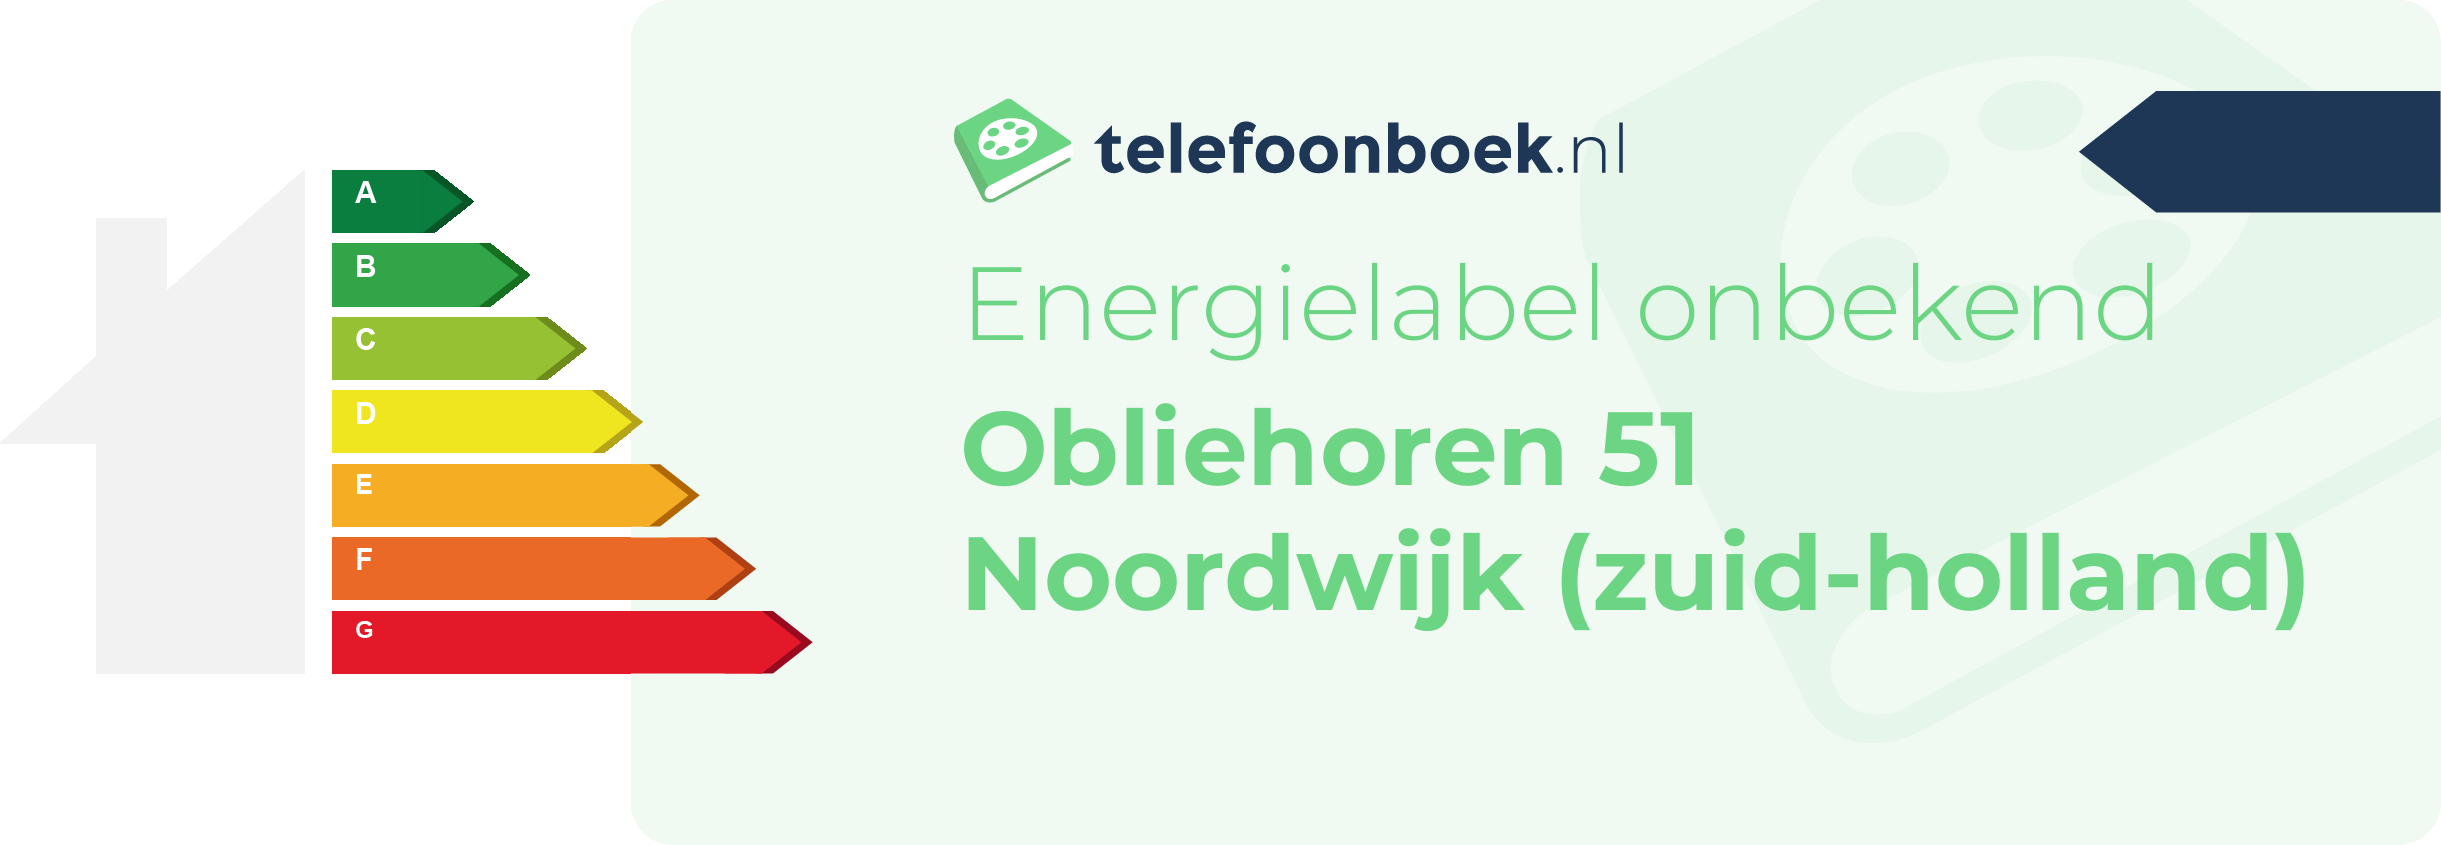 Energielabel Obliehoren 51 Noordwijk (Zuid-Holland)